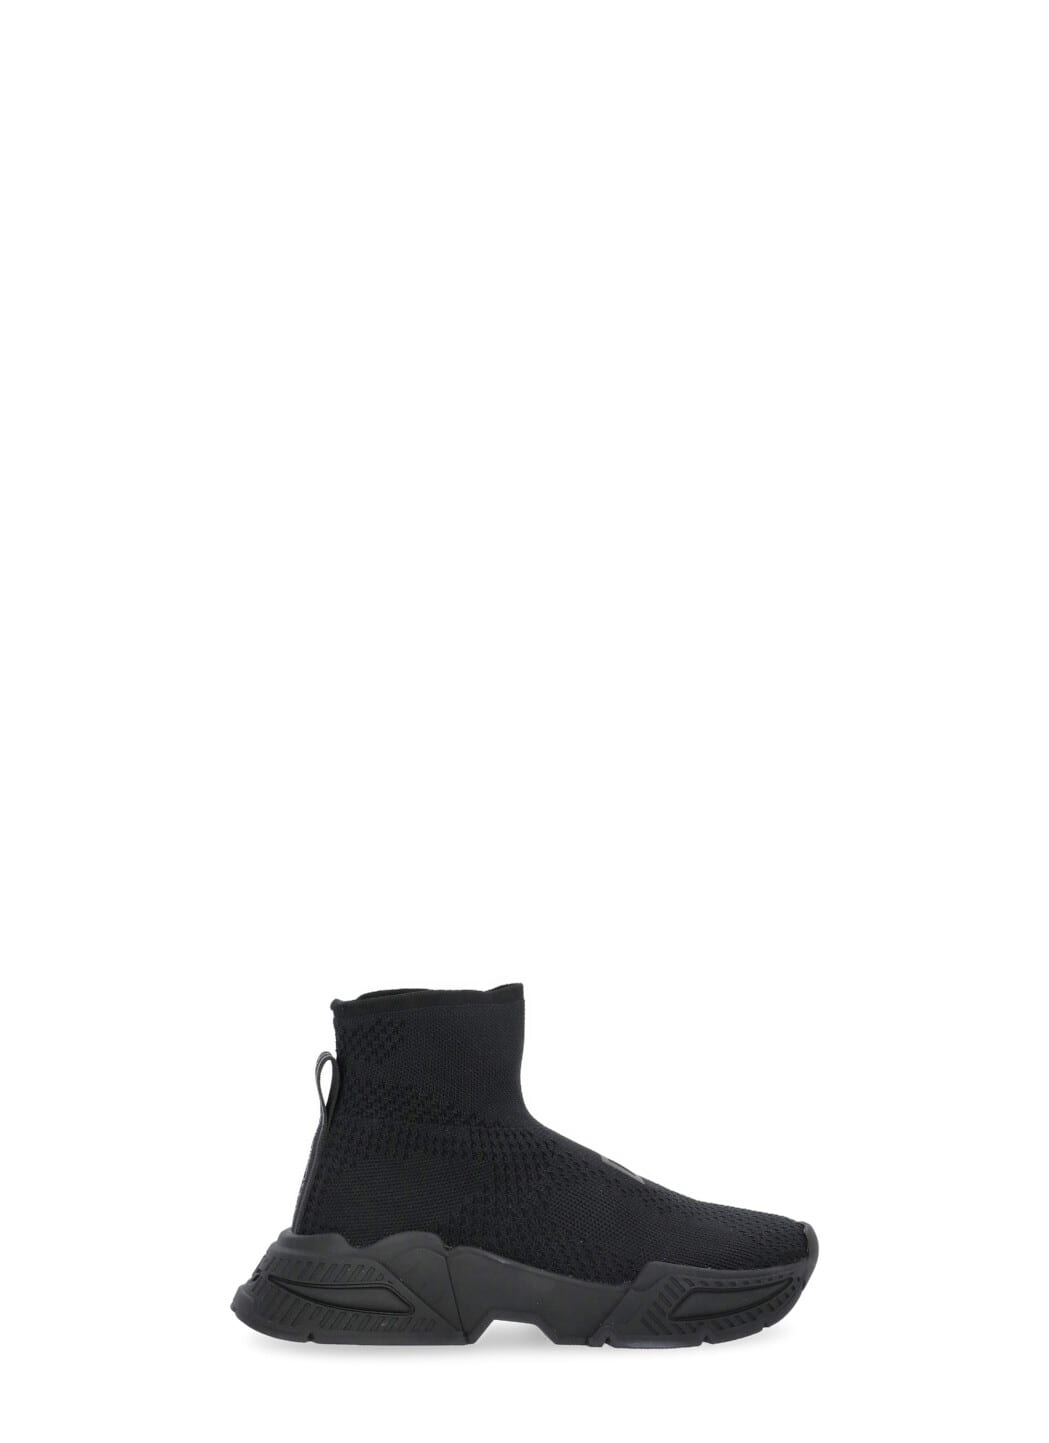 Dolce & Gabbana Kids' Slip-on Sneakers In Black